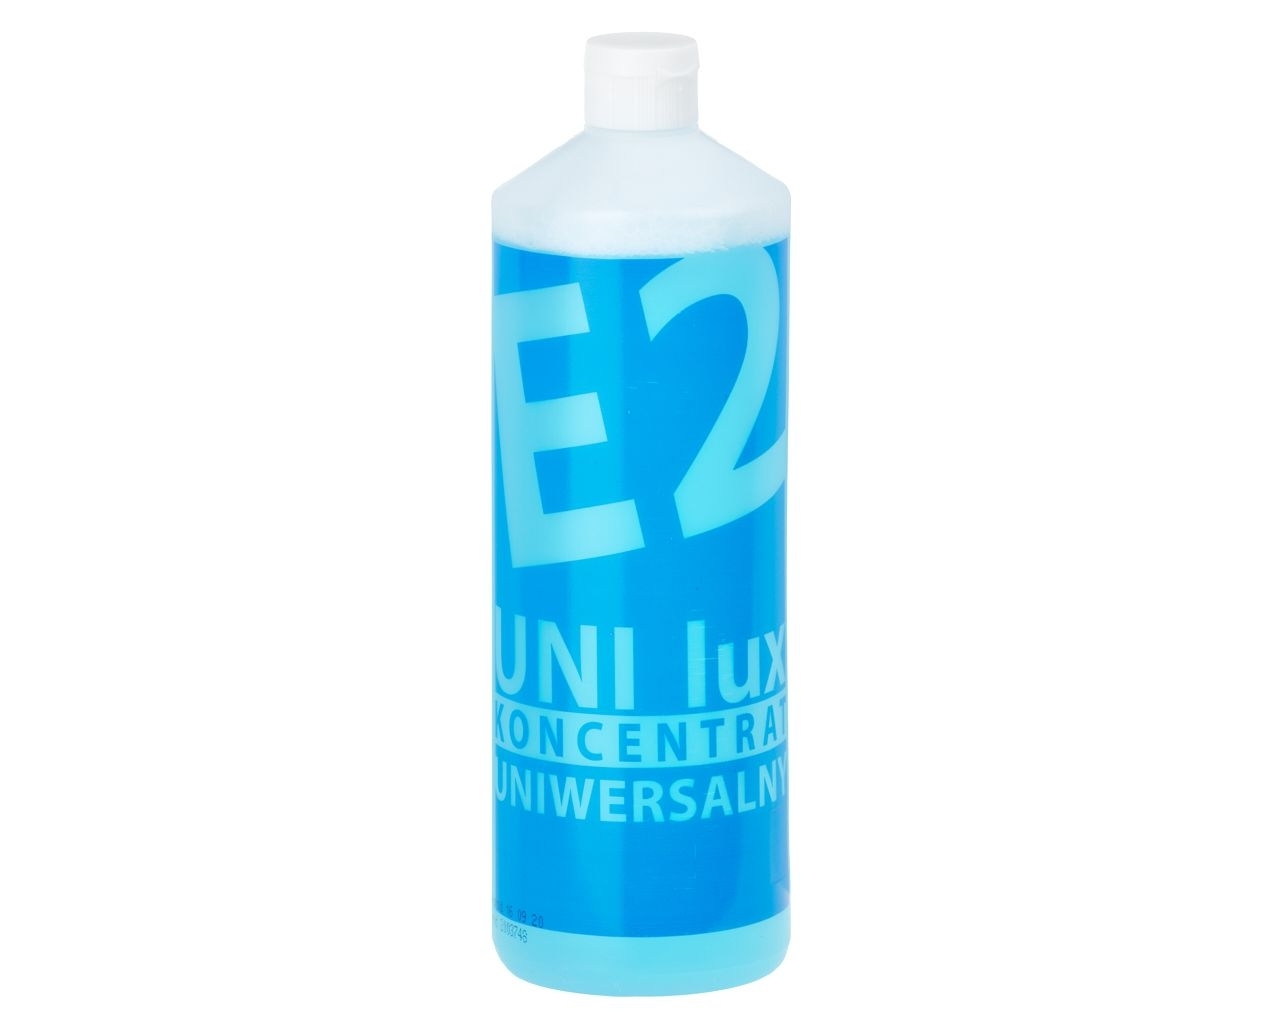 MERIDA E2 UNI Lux - środek uniwersalny do bieżącego mycia, butelka 1 l